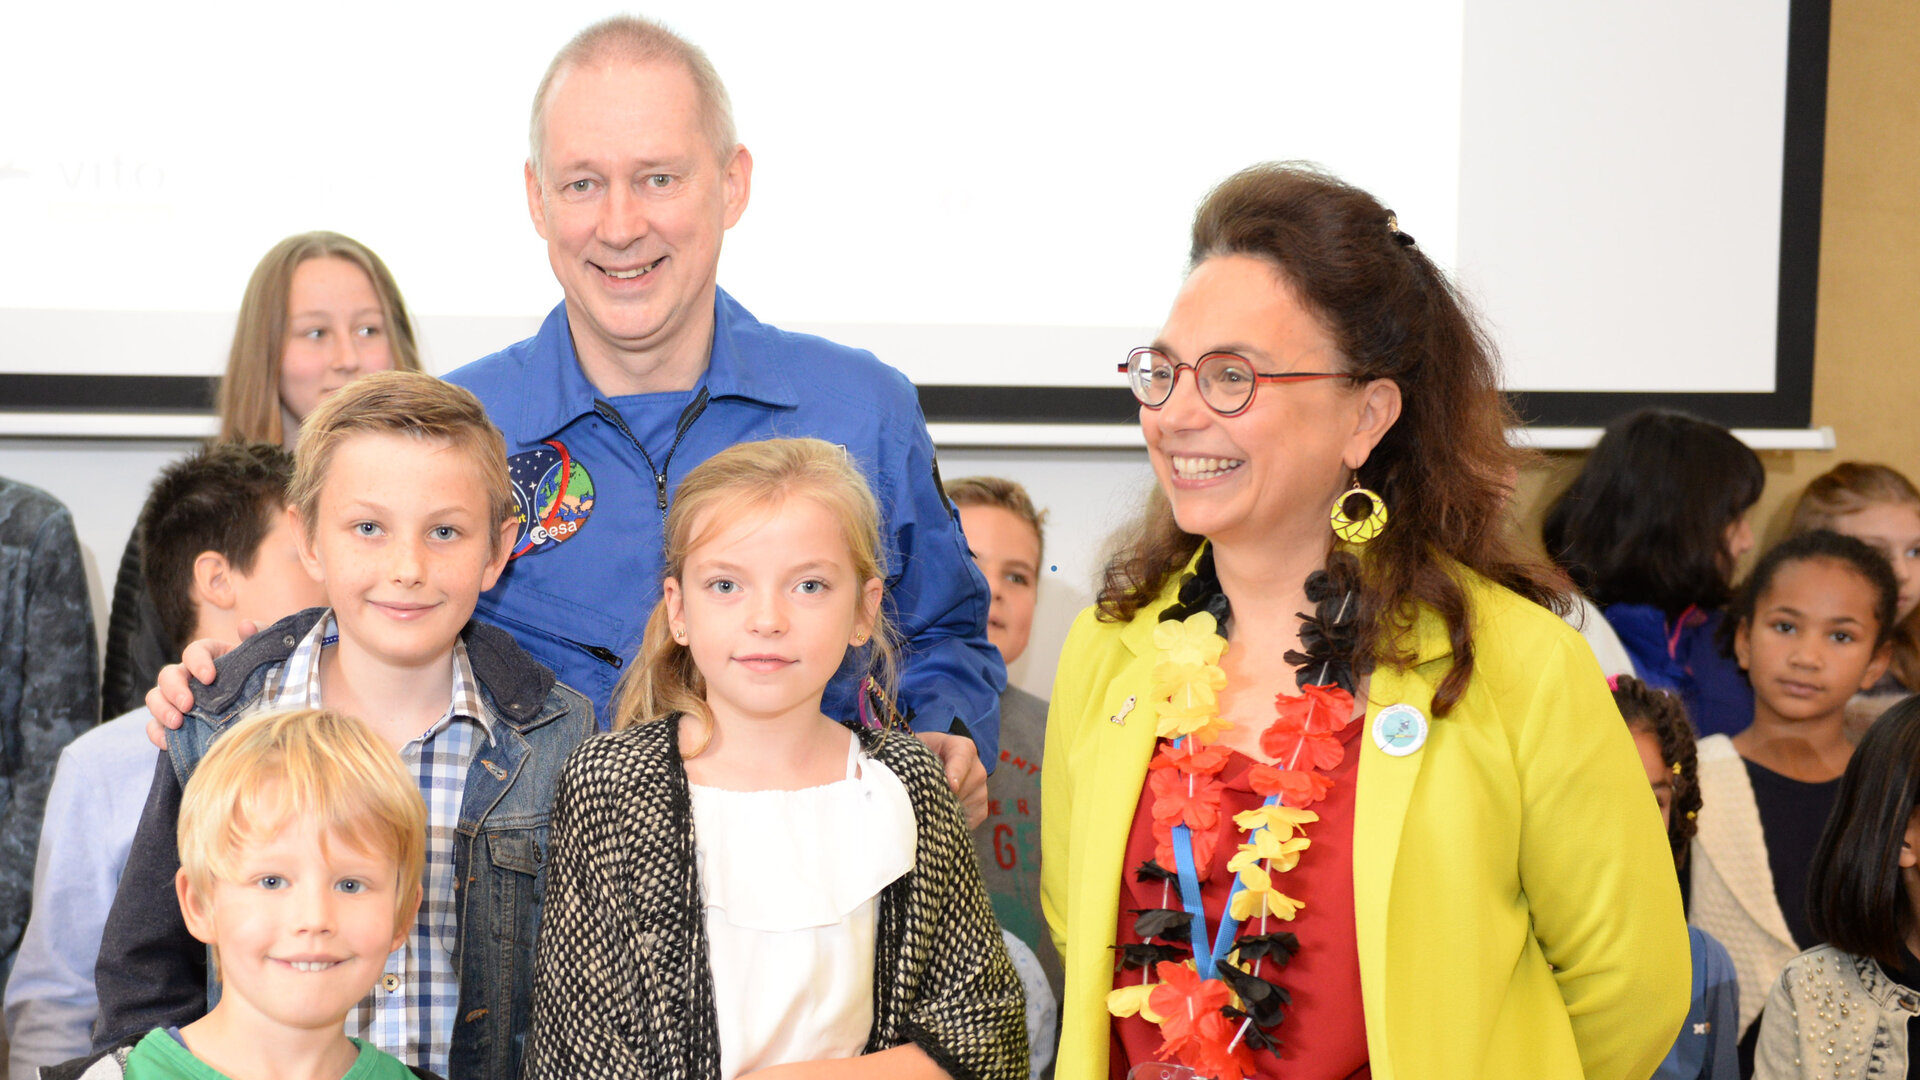 Frank De Winne et Sarah Baatout du SCK-CEN avec des élèves de l'école internationale de Mol